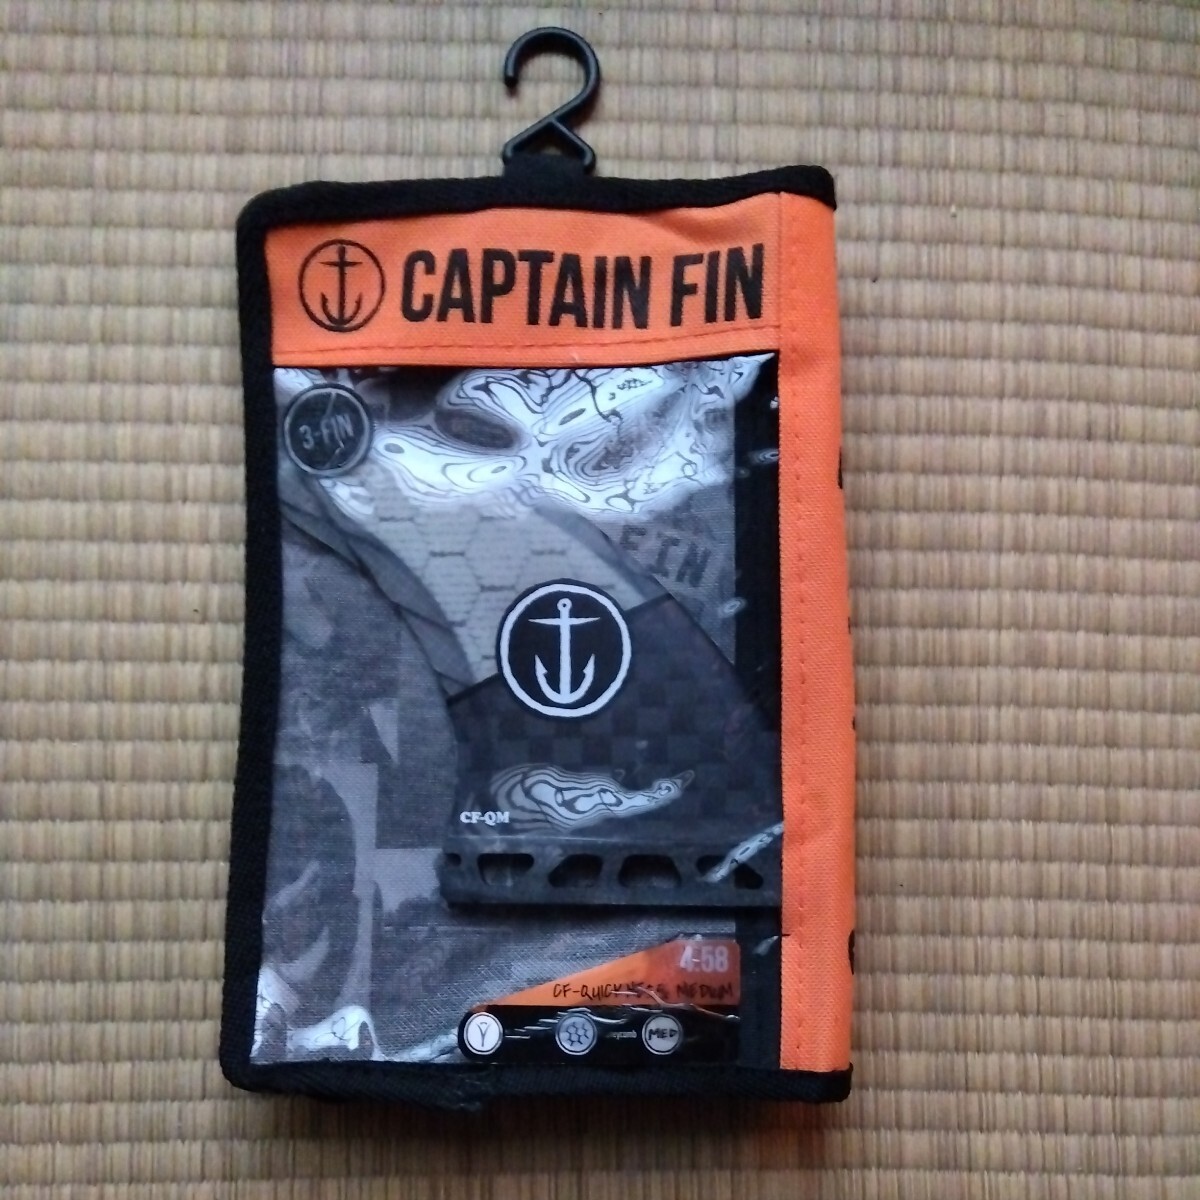 Captain Fin Medium 3 штуки устанавливают будущую цену 14500 иен